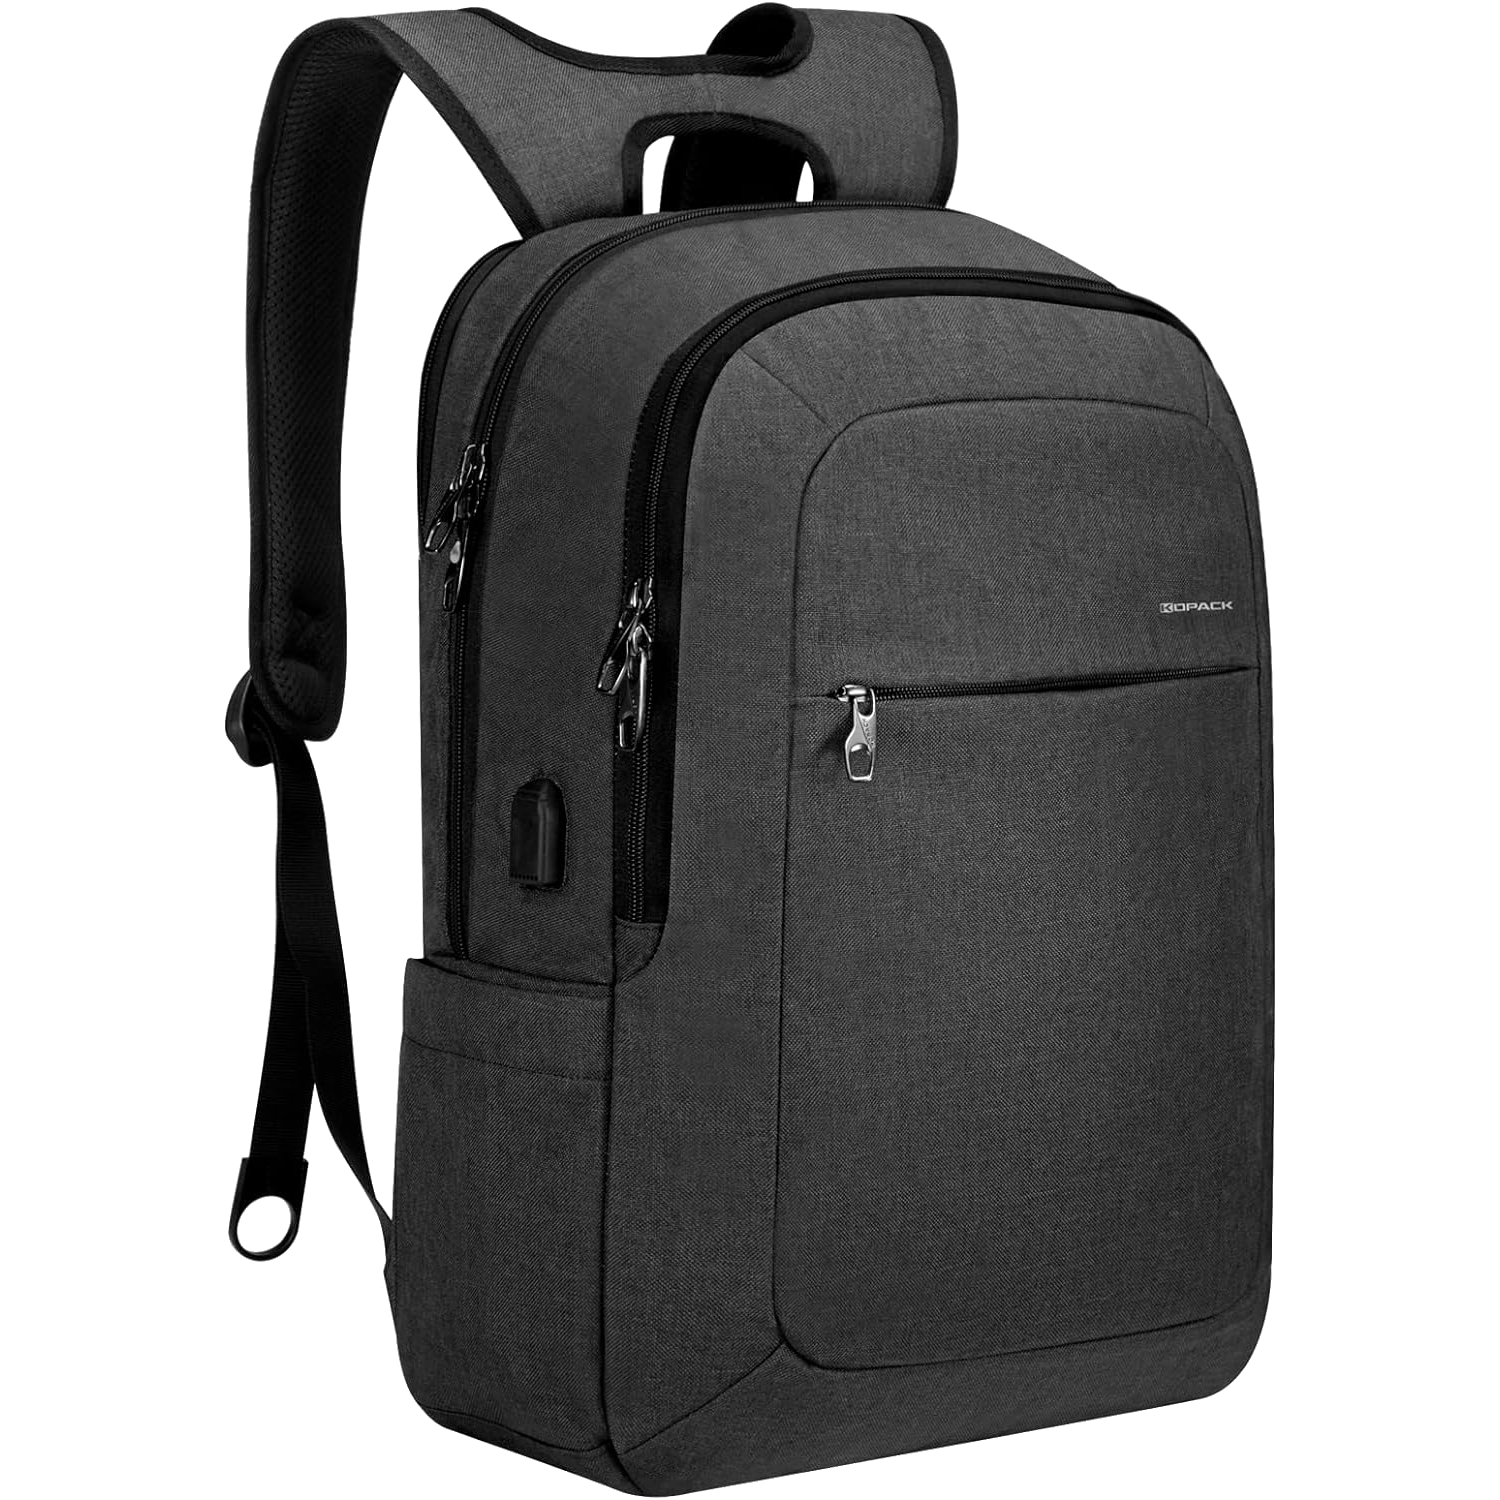 kopack-17-laptop-backpack-render-01